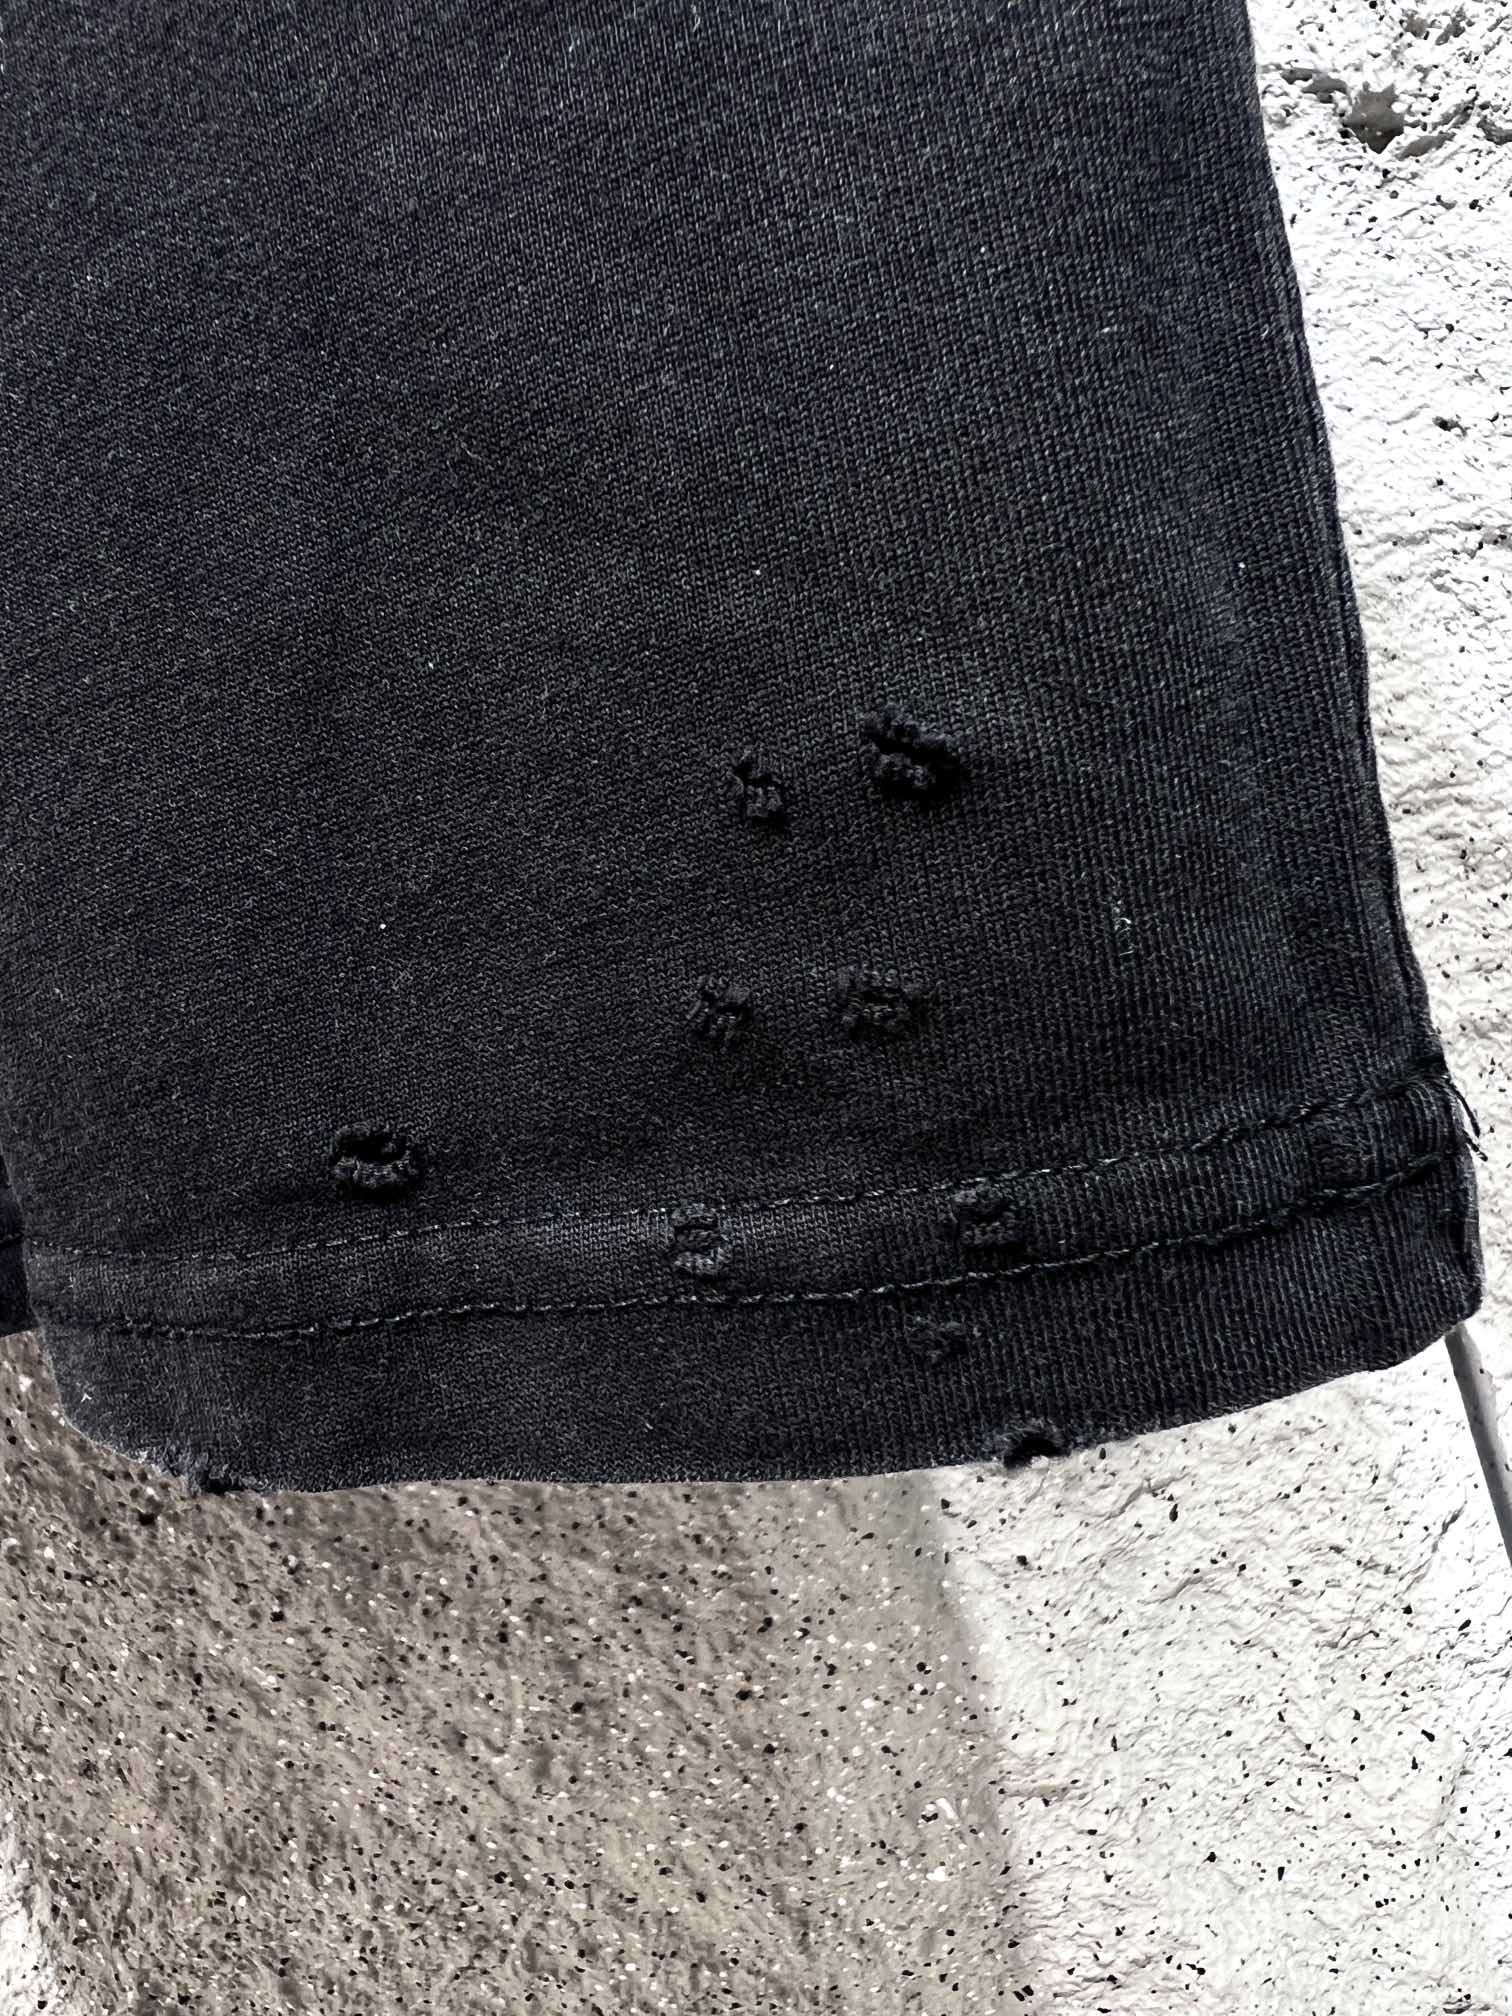 数量限定の爆買 バレンシアガの服コピー トップス 半袖 シンプル 純綿 柔らかい 男女兼用 ブラック_7